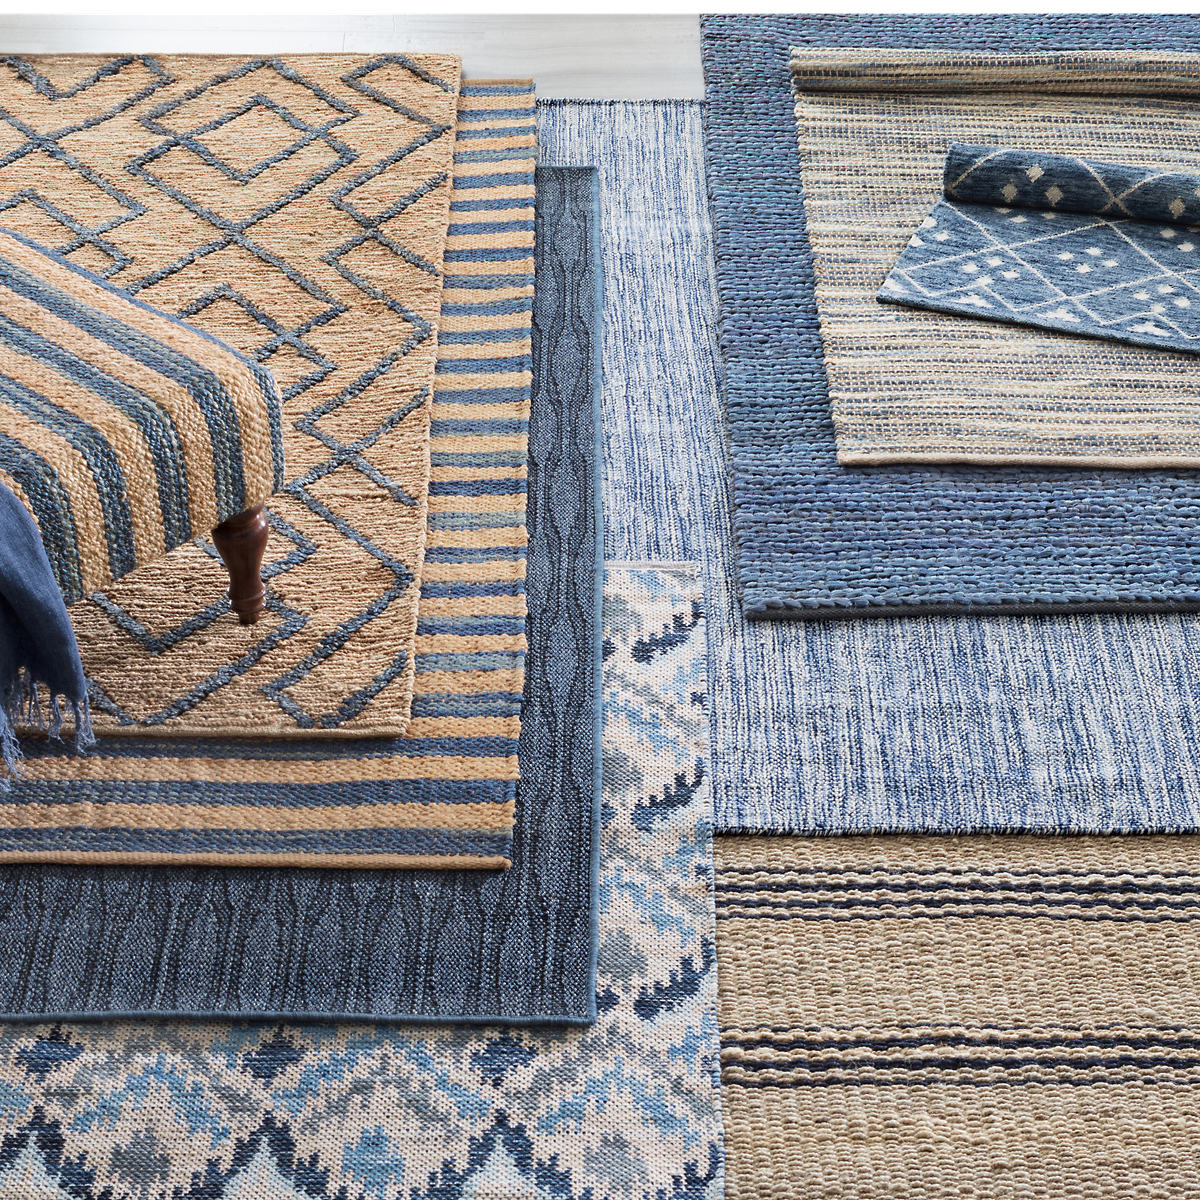 Details about  / Cotton Indigo Floor Area Runner Block Printed Handmade Woven Beach Mat Carpet